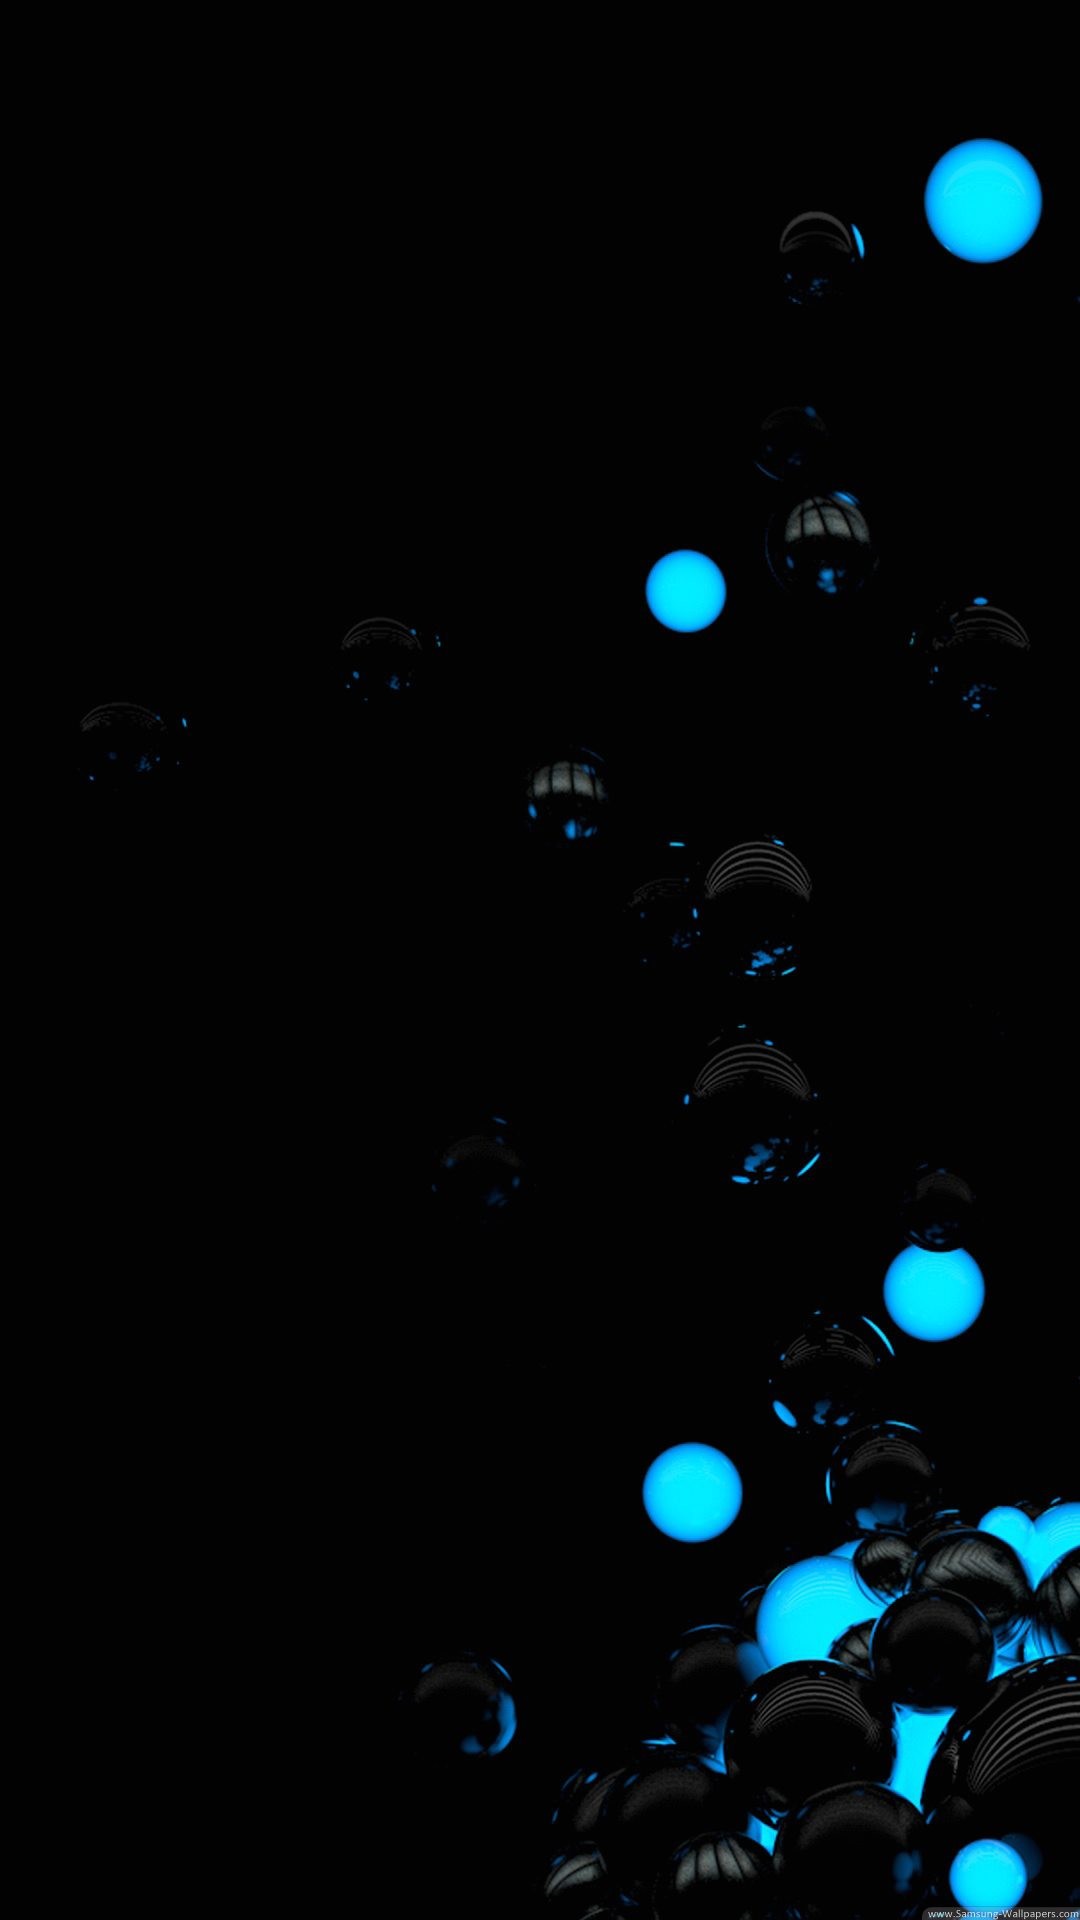 1080x1920 Wallpaper full hd 1080 x 1920 smartphone bubbles 3d black blue